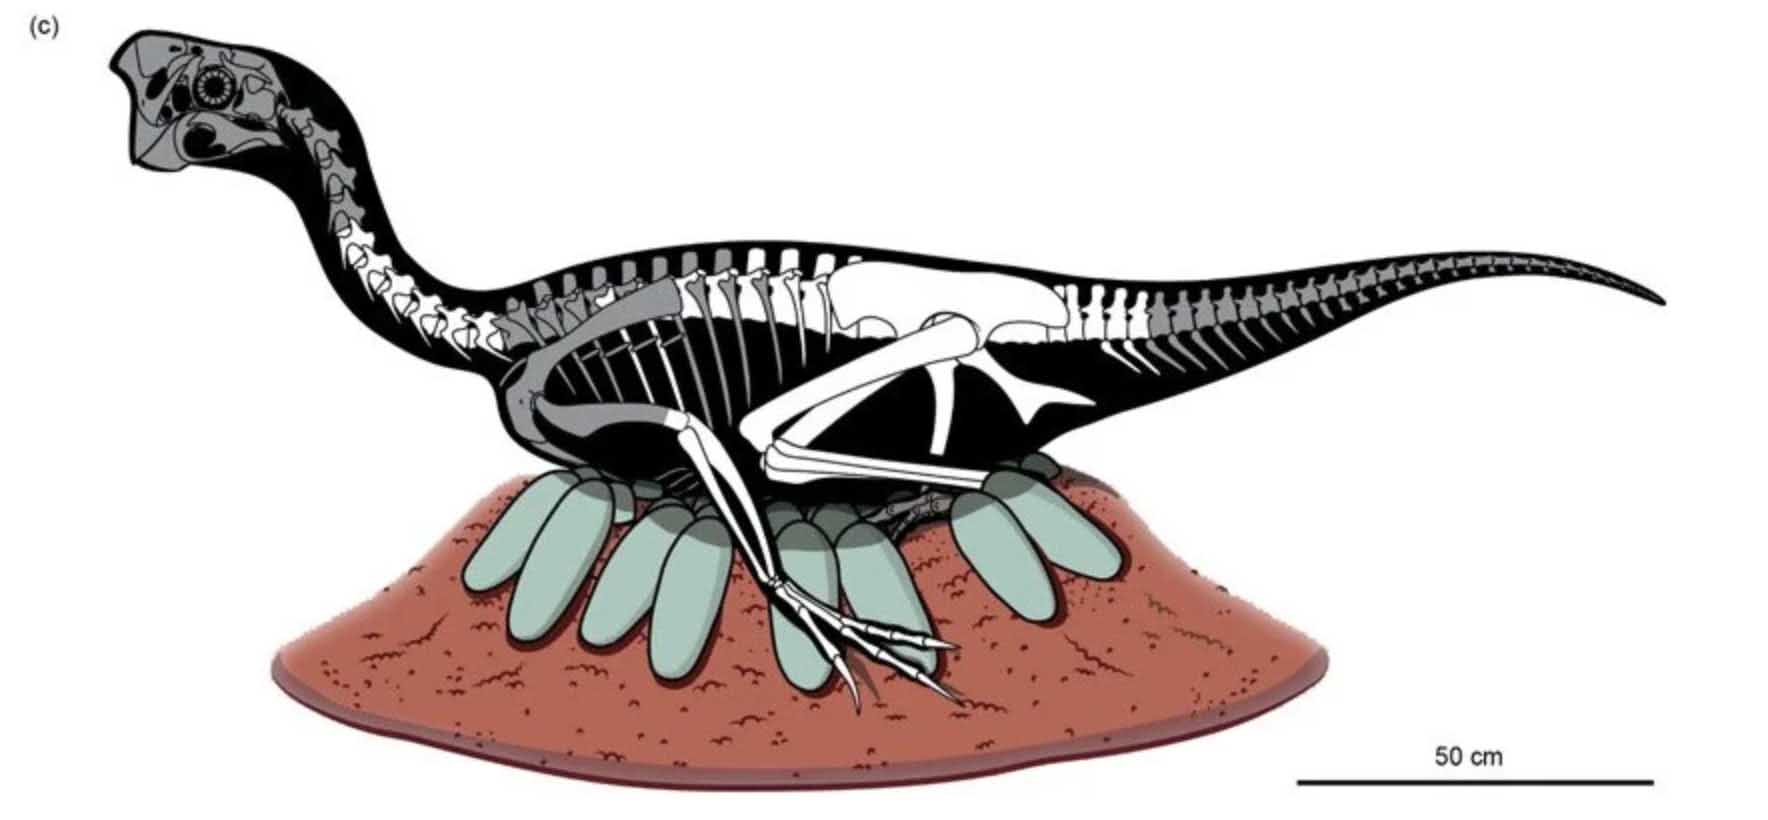 Fosilleşmiş yumurta 3 içinde inanılmaz derecede korunmuş dinozor embriyosu bulundu